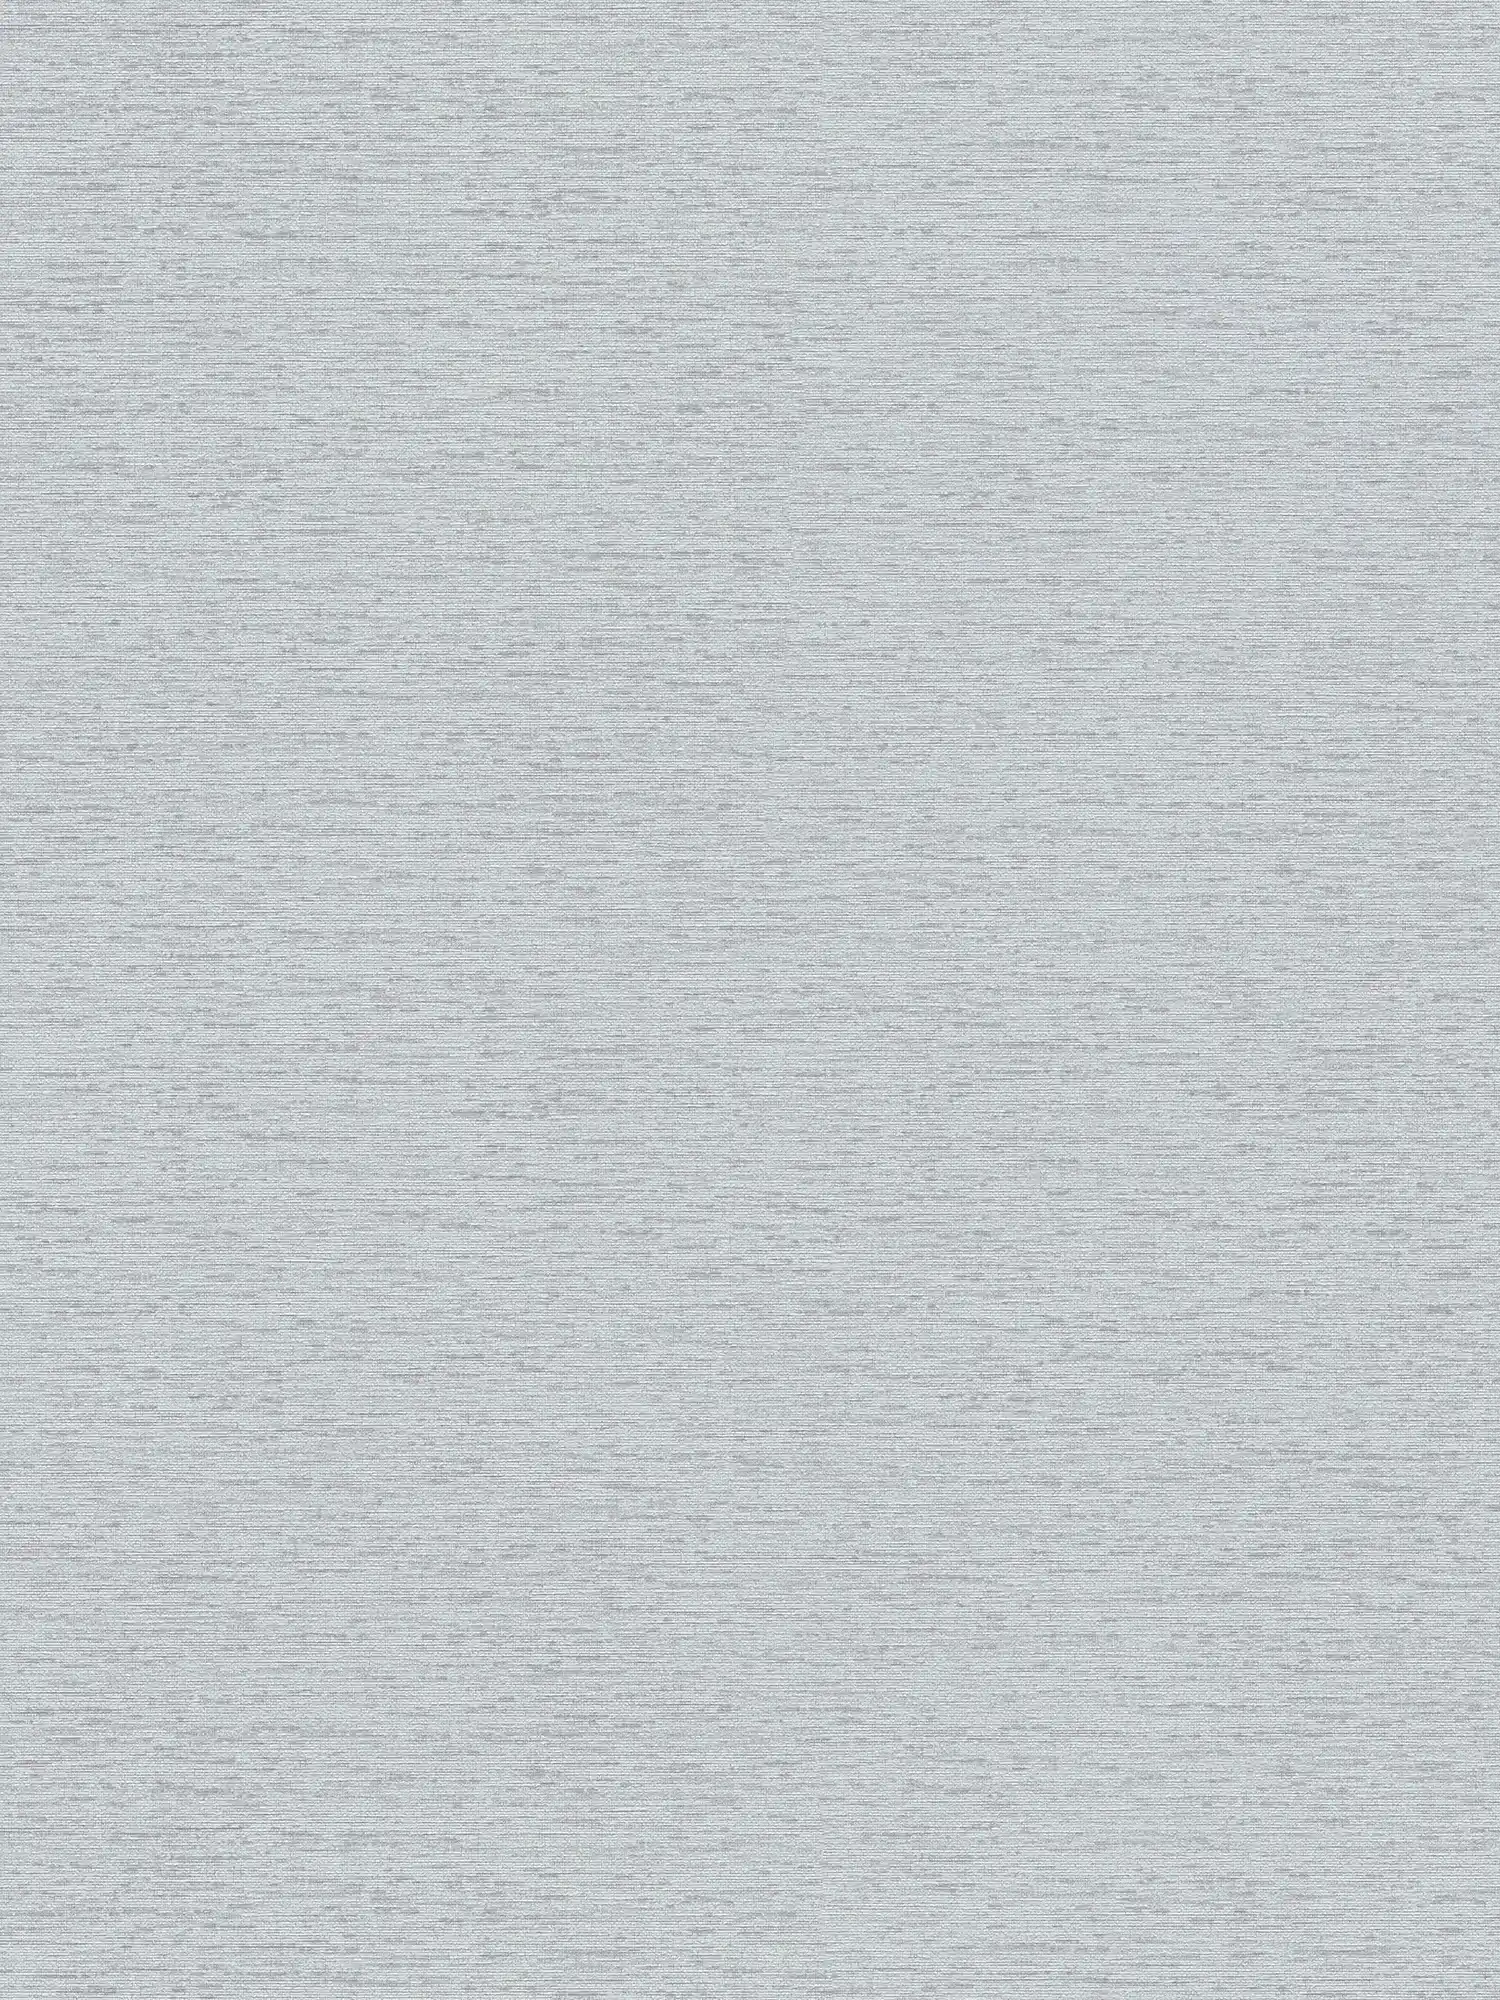 Effen vliesbehang in textiellook met lichte structuur, mat - grijs, lichtgrijs
